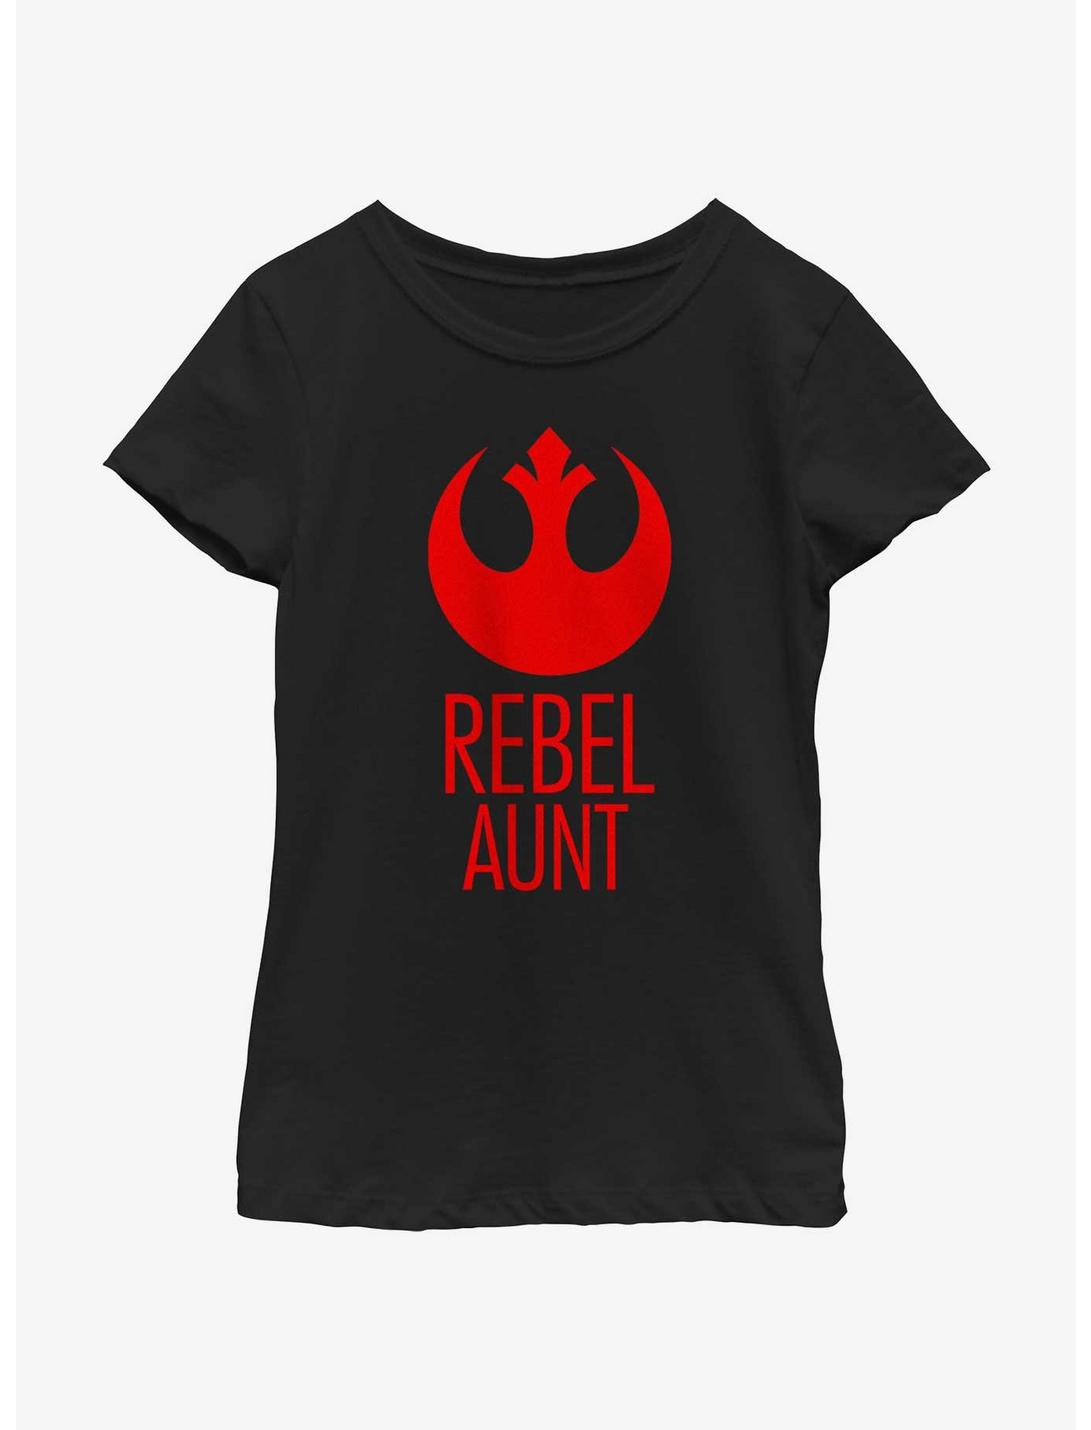 Star Wars Rebel Aunt Youth Girls T-Shirt, BLACK, hi-res